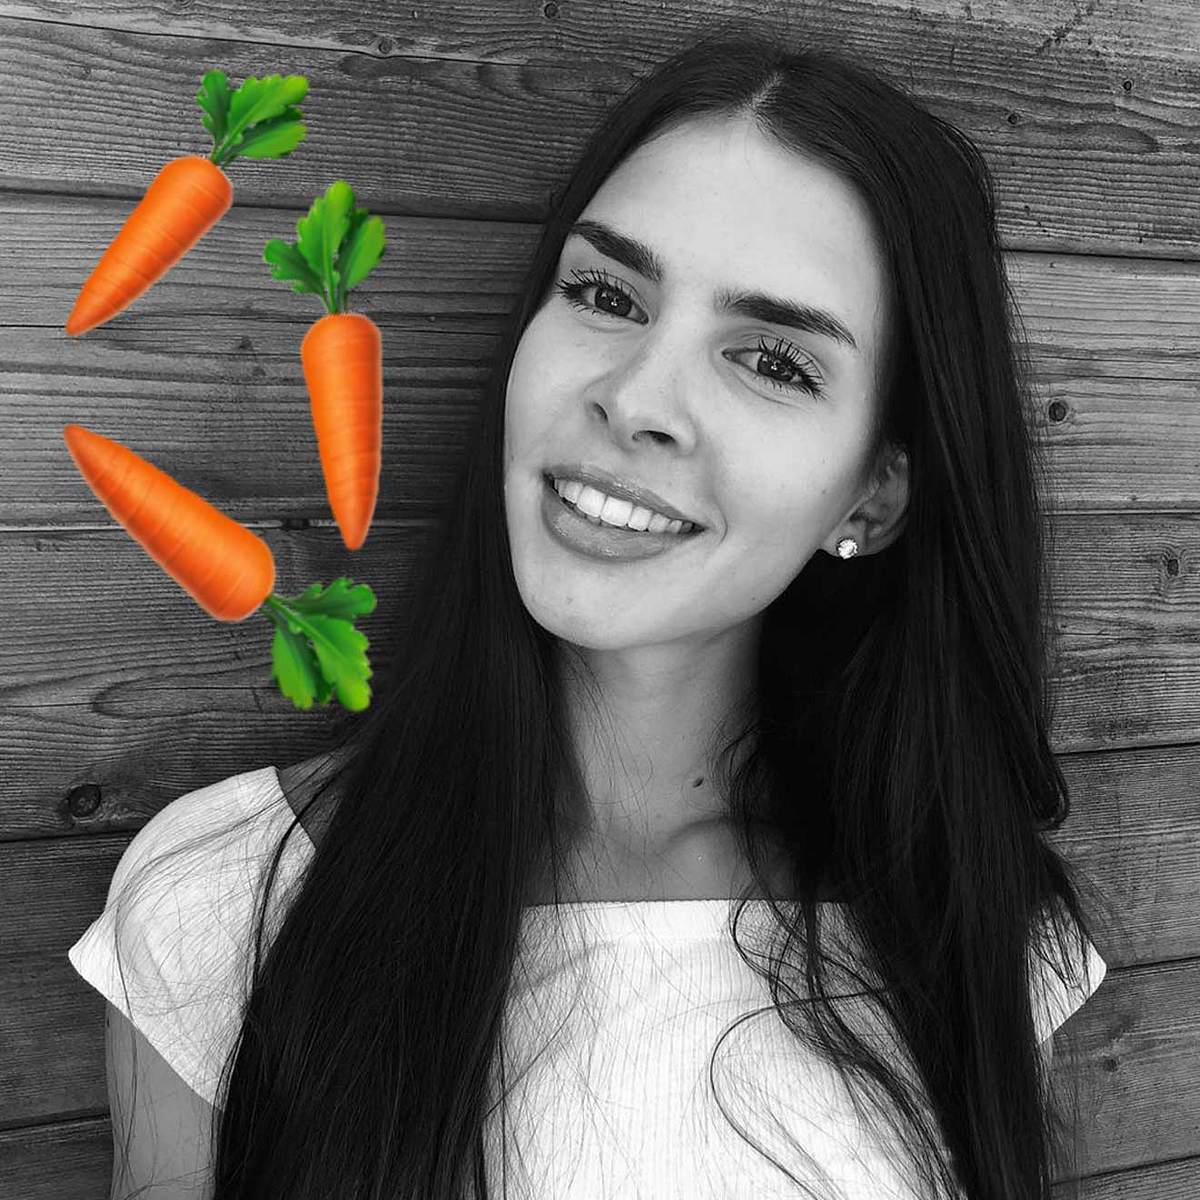 GNTM 2020: Kandidatin isst Karotten und bekommt gelbe Haut